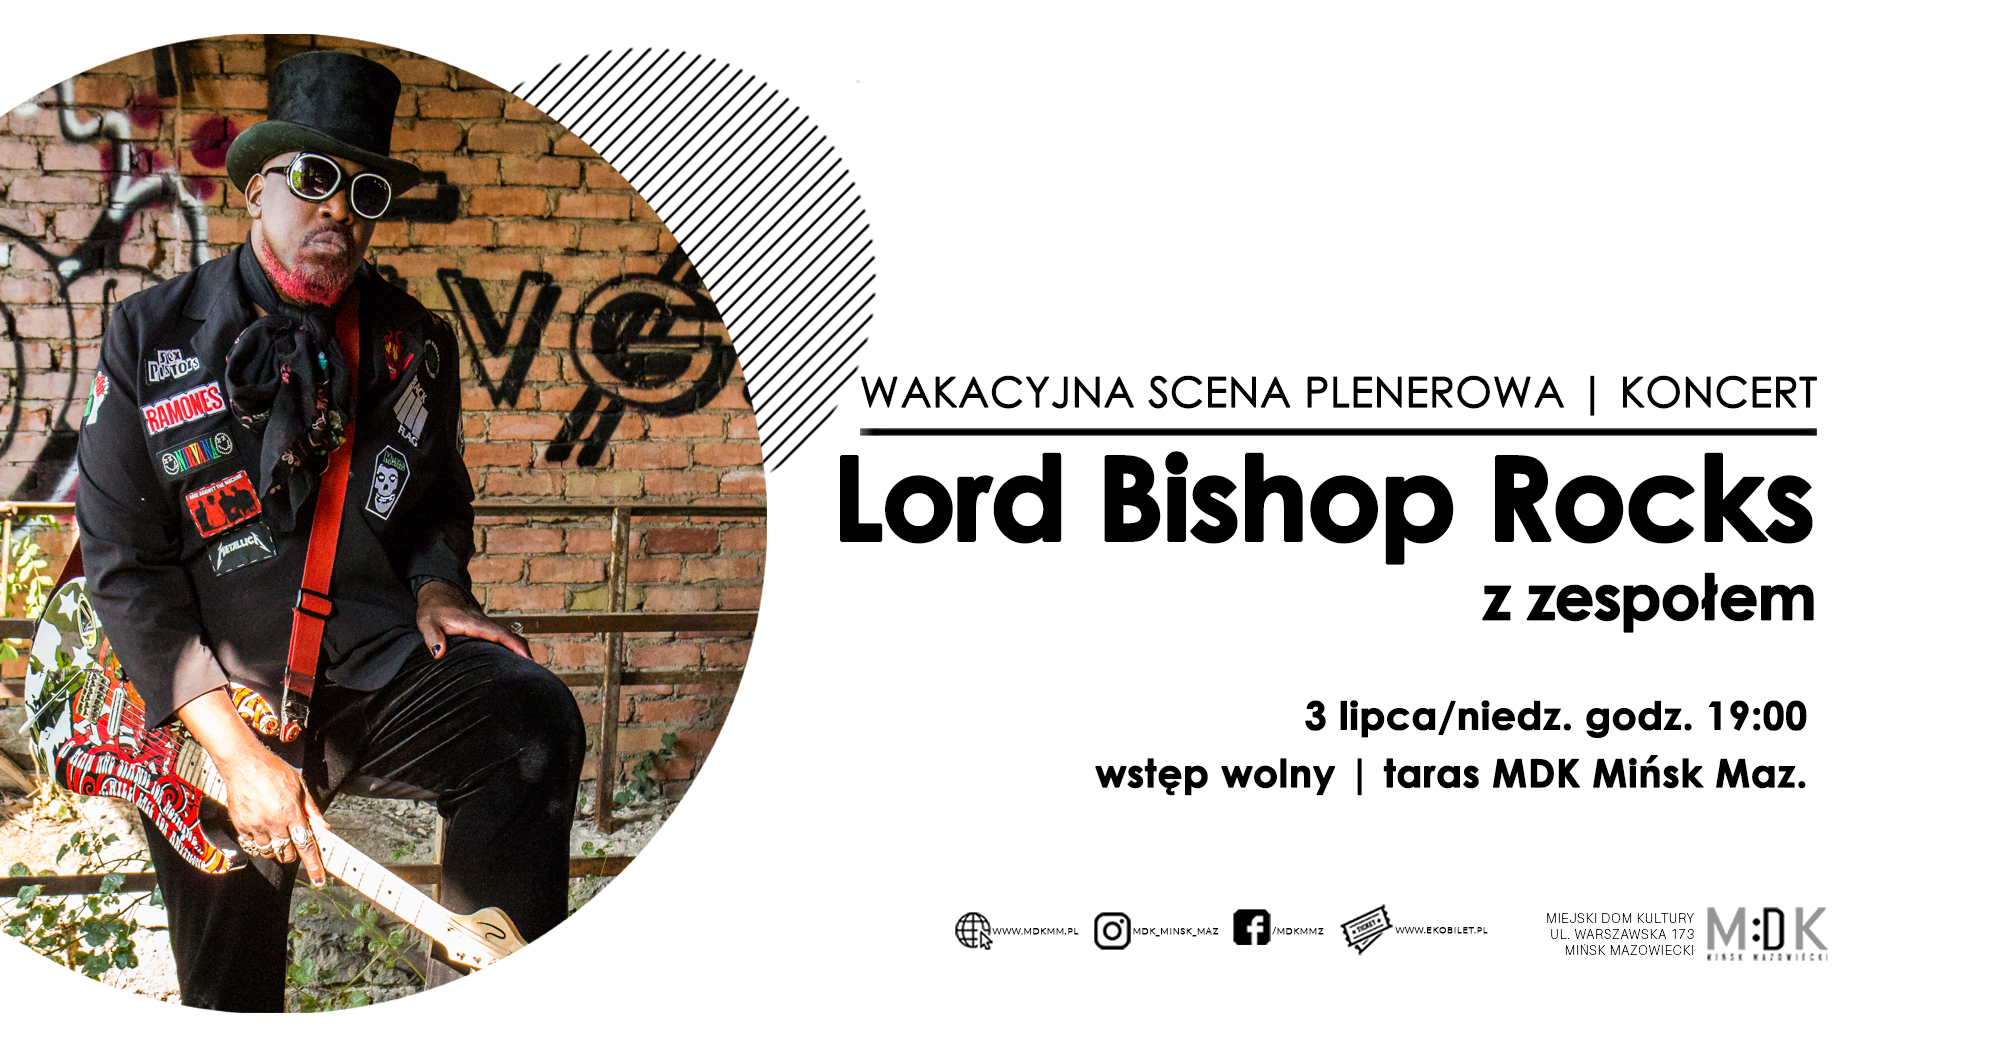 "Lord Bishop Rocks z zespołem" - wakacyjna scena plenerowa koncert w MDK 3.07.2022r.